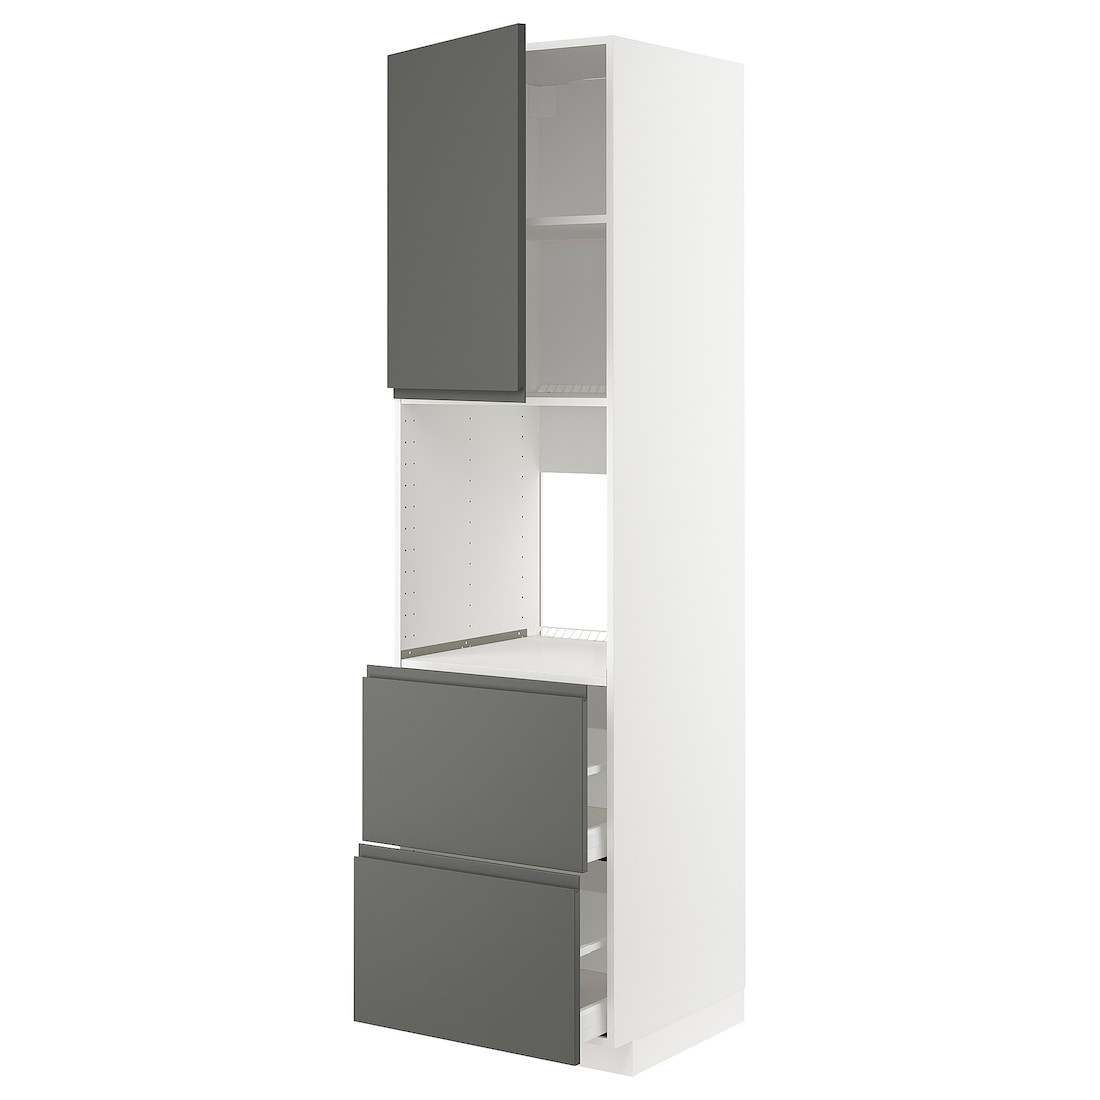 METOD МЕТОД / MAXIMERA МАКСИМЕРА Высокий шкаф для духовки с дверцей / ящиками, белый / Voxtorp темно-серый, 60x60x220 см